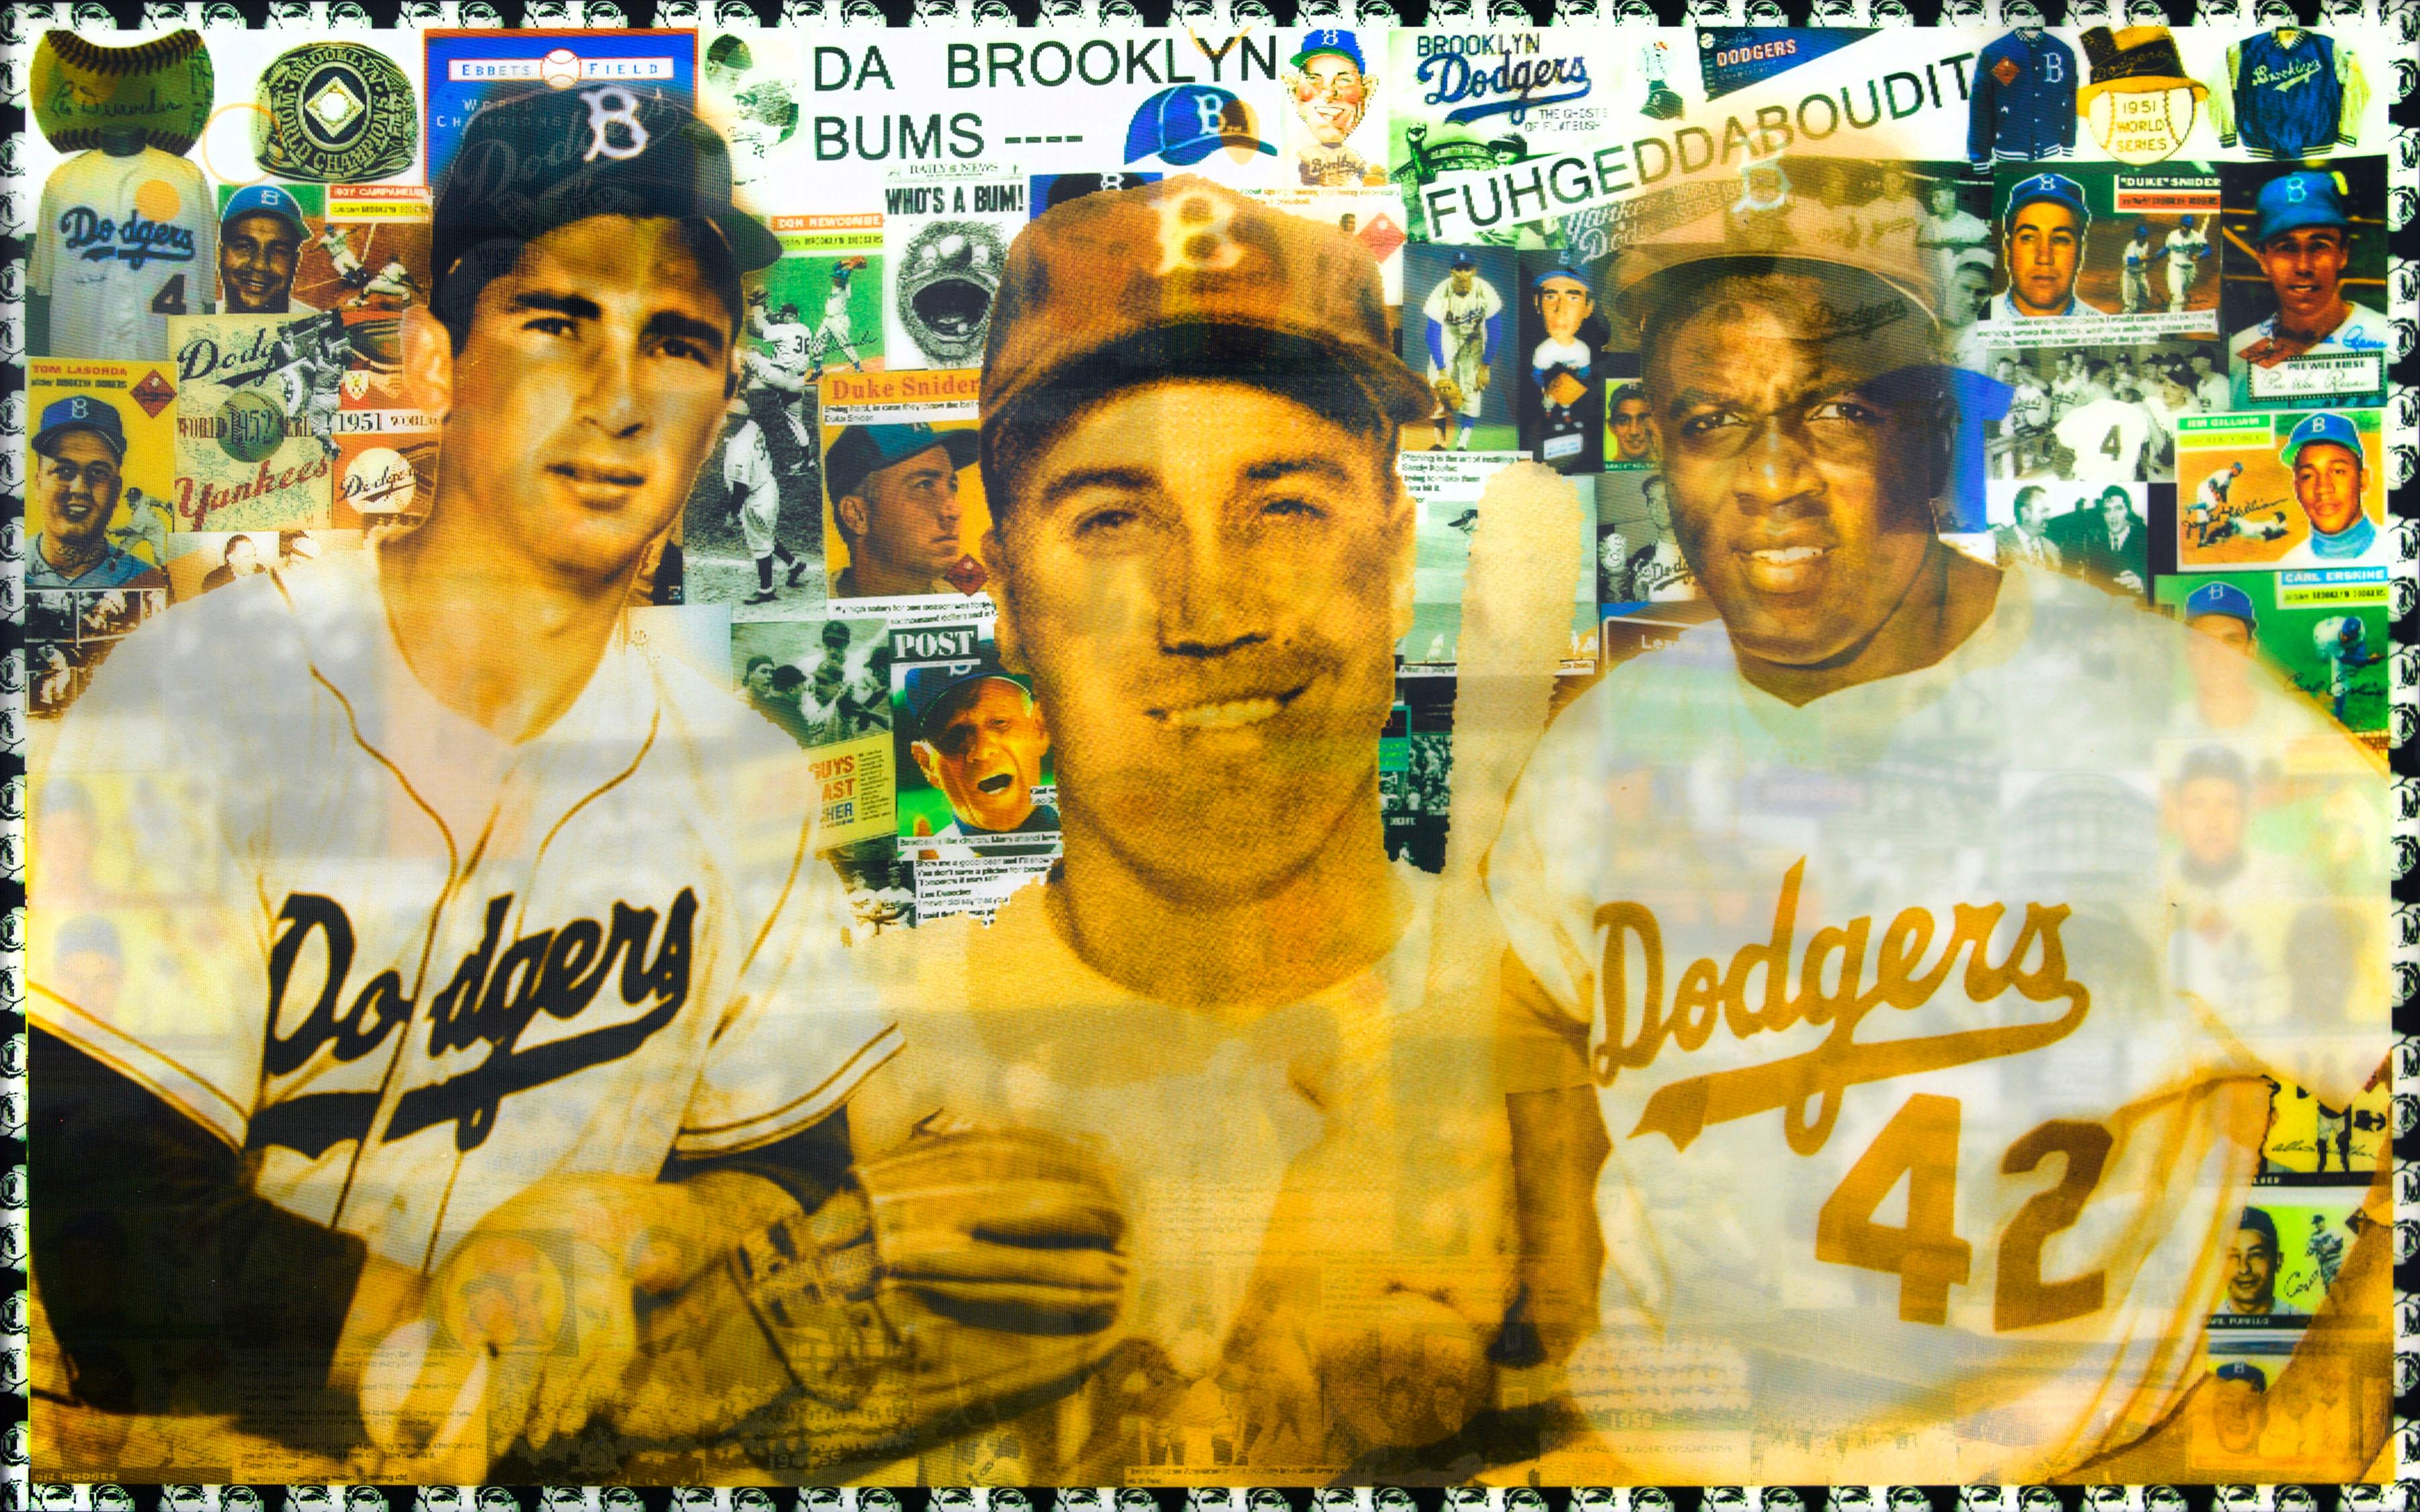 Dodgers Da Brooklyn Bums, Lentikulardruck von DJ Leon, 36 x 24 Zoll